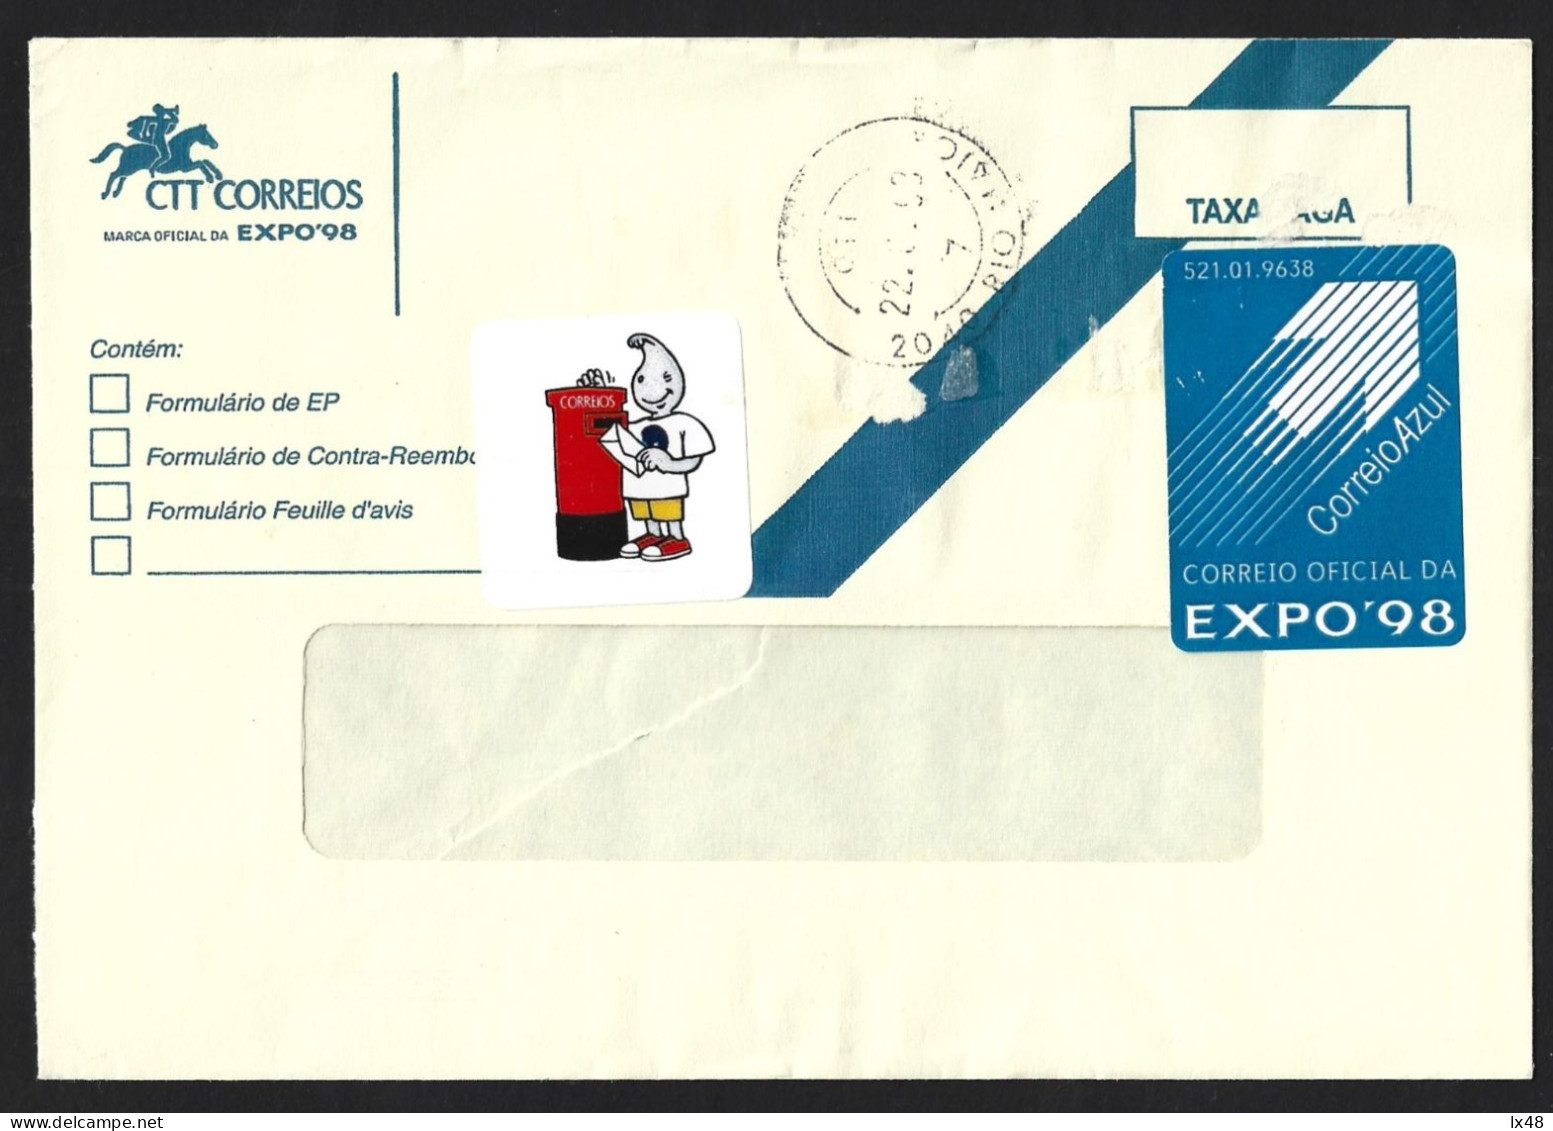 Carta Expedida Da EXPO 98 Com Vinheta Do Gil E Vinheta De Correio Azul. Letter Sent EXPO 98 With Sticker From Gil. - Covers & Documents